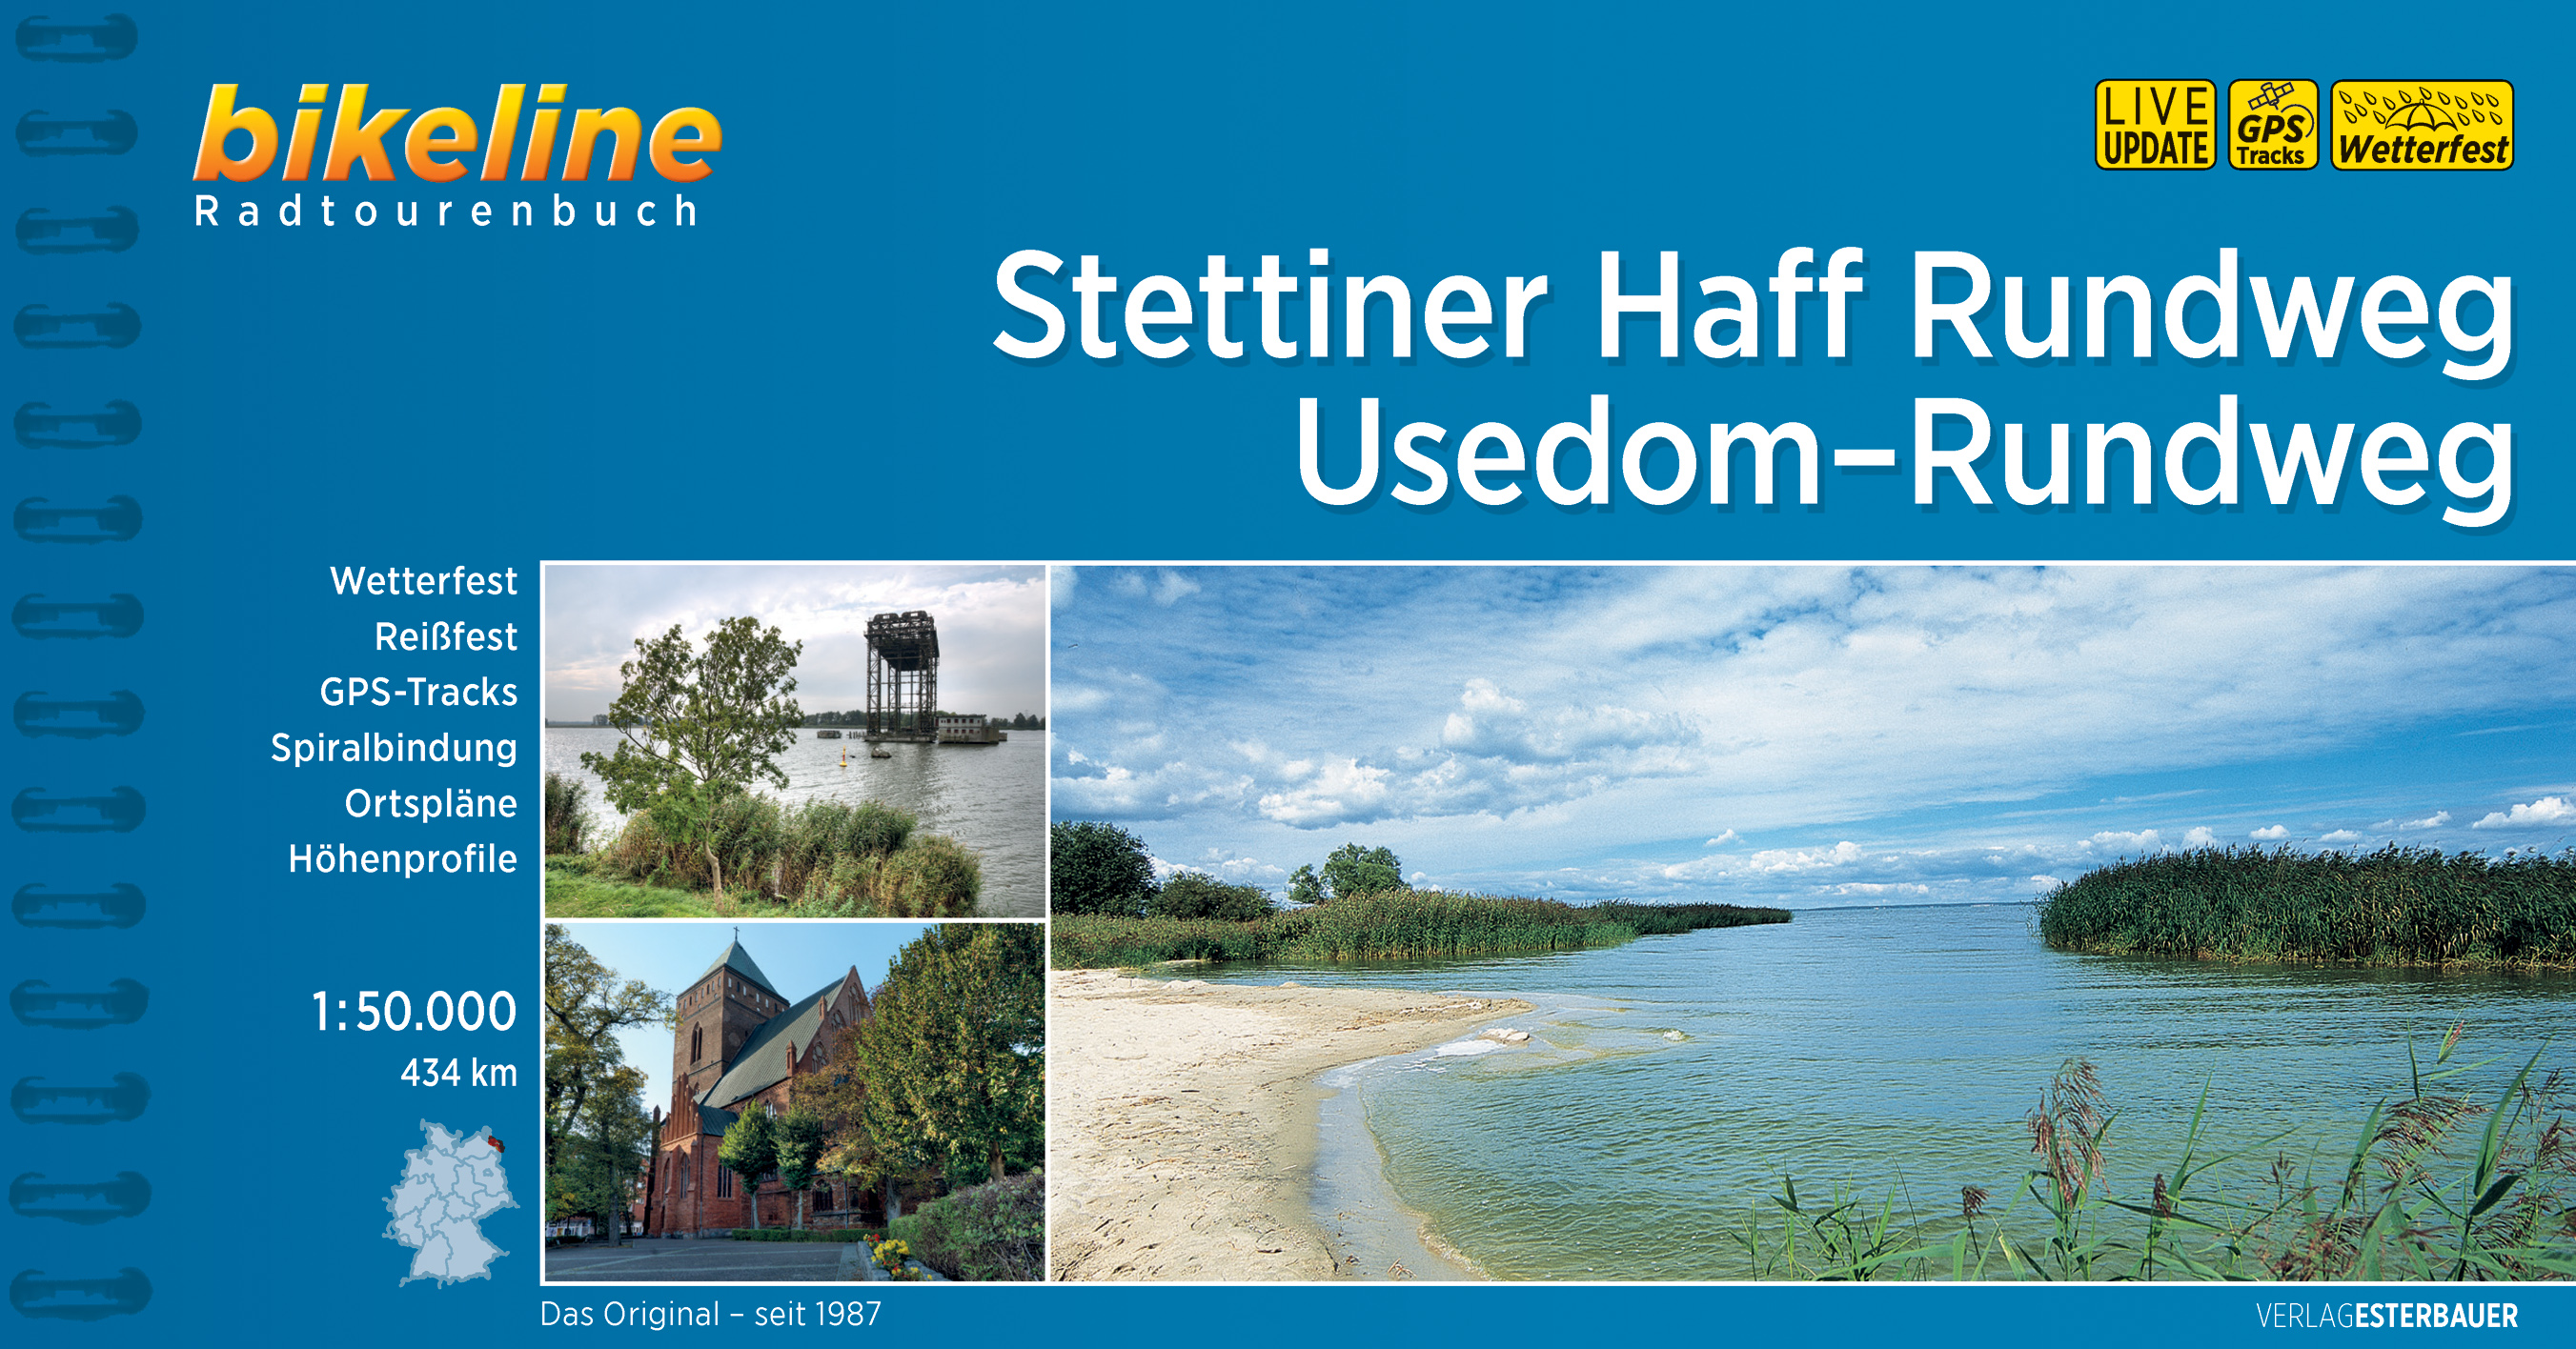 Fietsgids Bikeline Stettiner Haff Rundweg Usedom Rundweg | Esterbauer